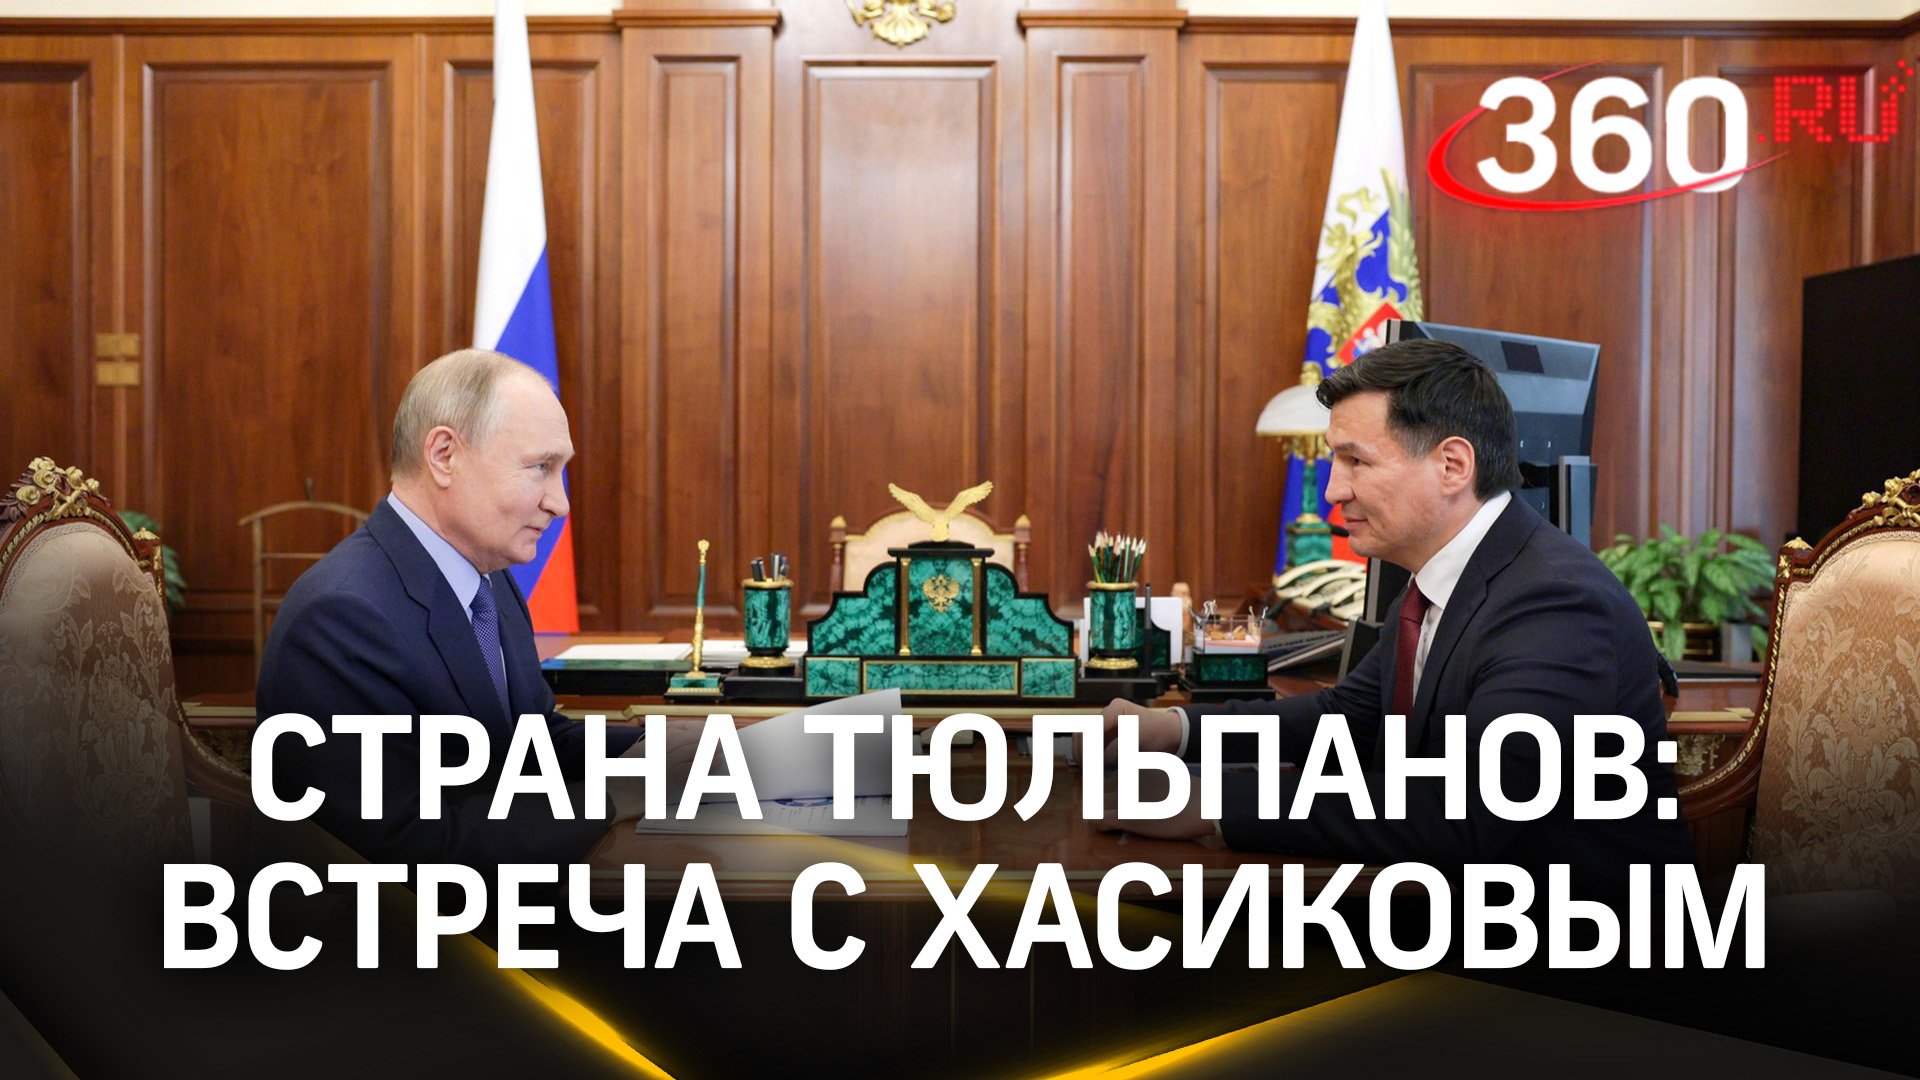 Путин назвал Калмыкию страной тюльпанов в разговоре с Бату Хасиковым